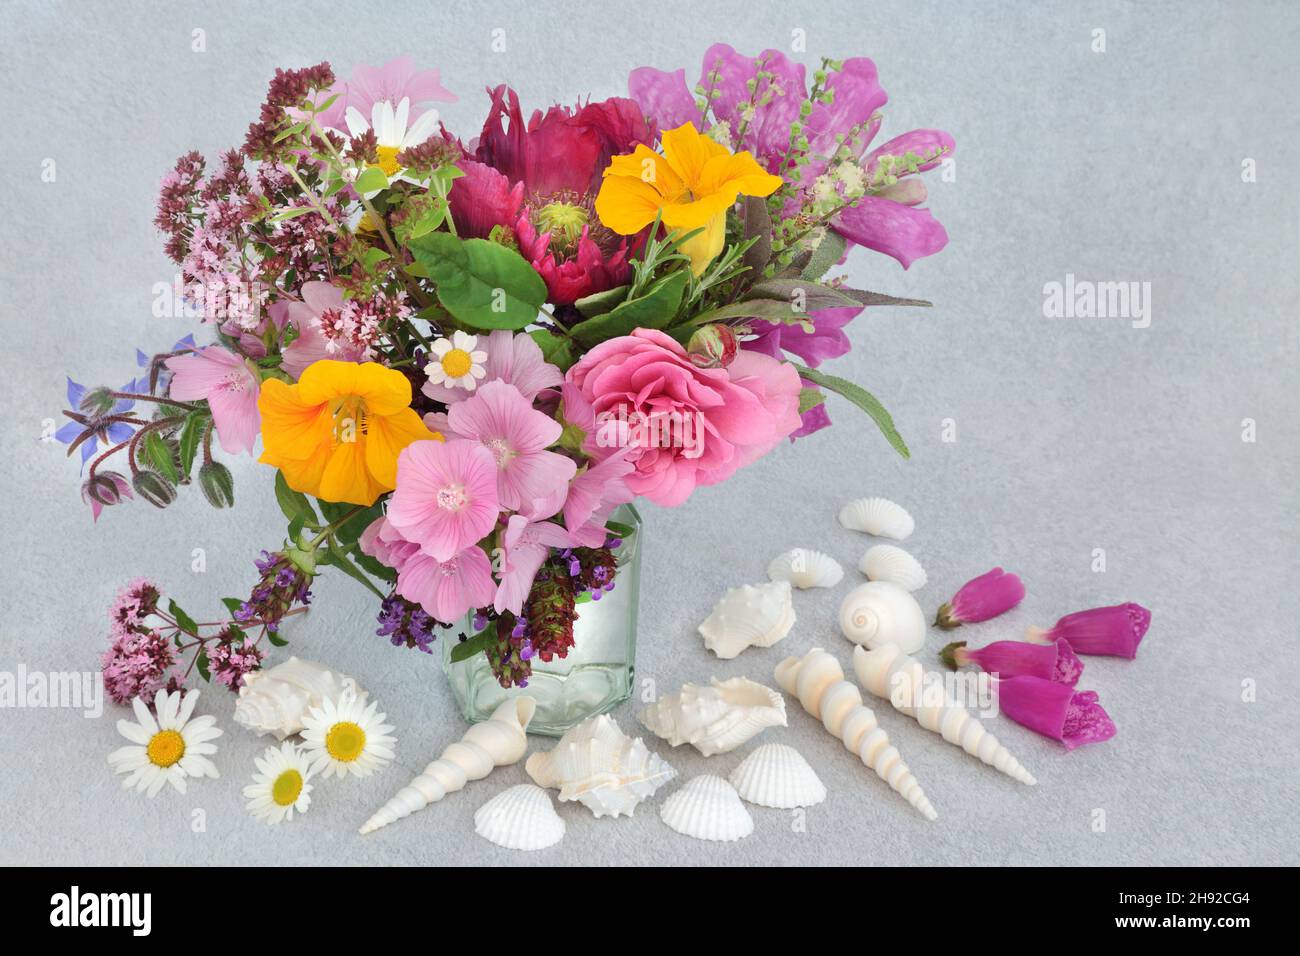 Arreglo floral inglés de verano en un jarrón con flores silvestres, hierbas y conchas de mar blancas. Flores utilizadas en remedios herbarios de la medicina de la planta. Foto de stock